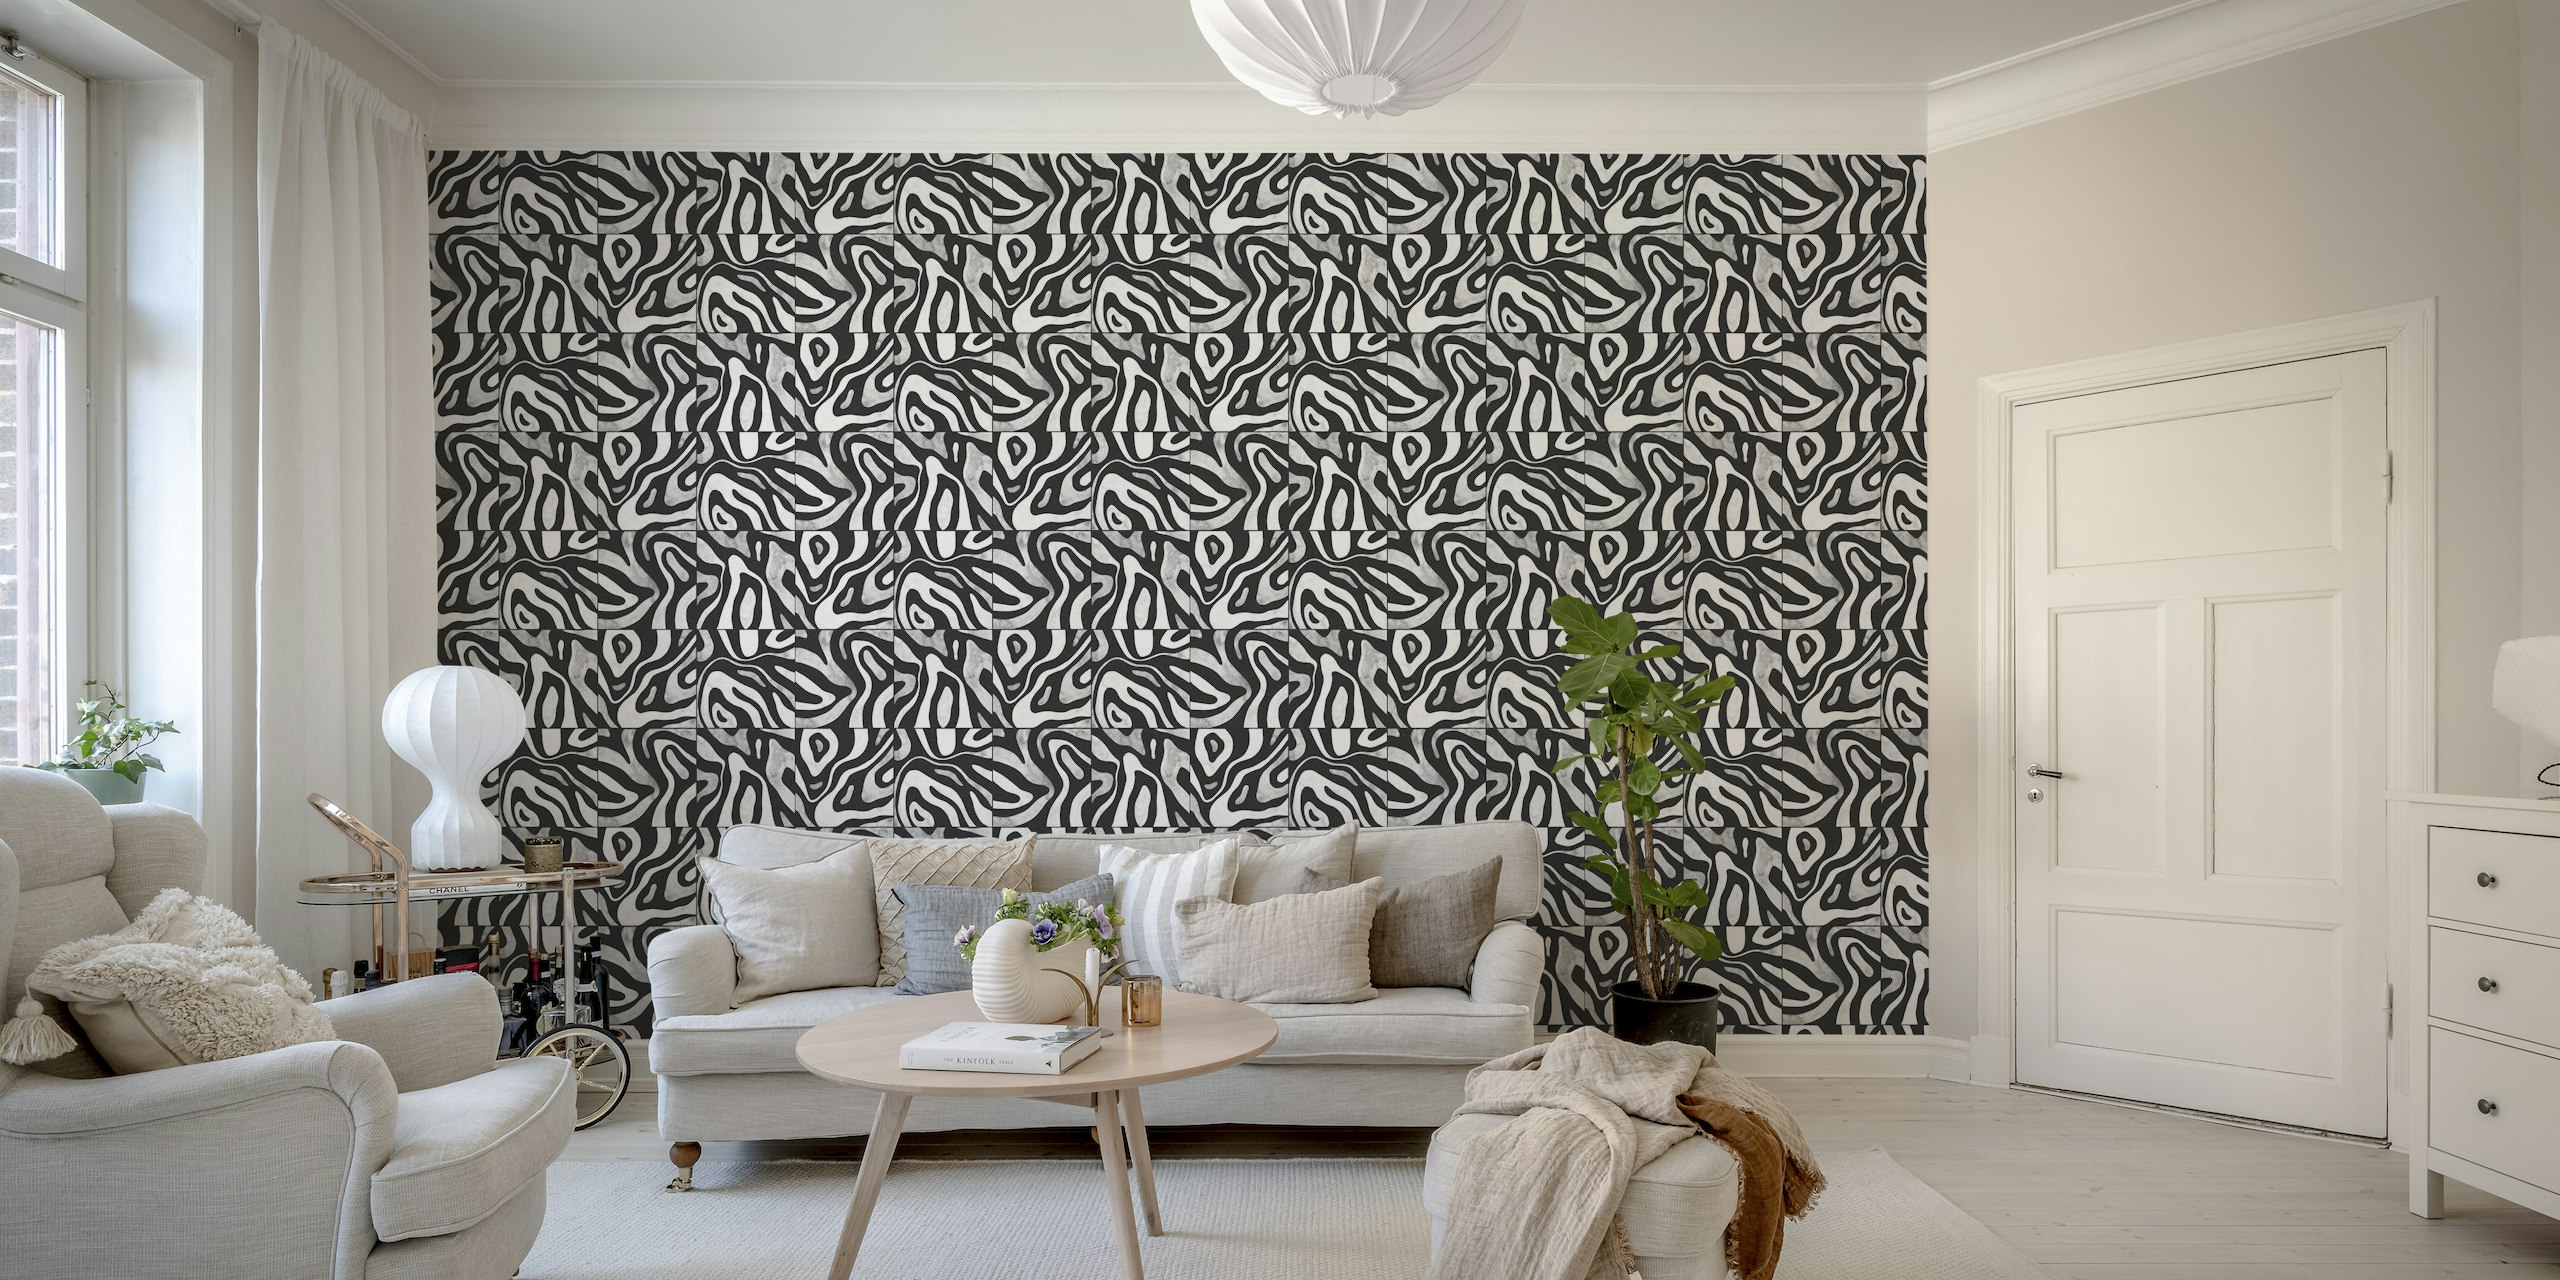 Abstrakt sort og hvid vægmaleri med et mønster, der ligner bakker set fra oven